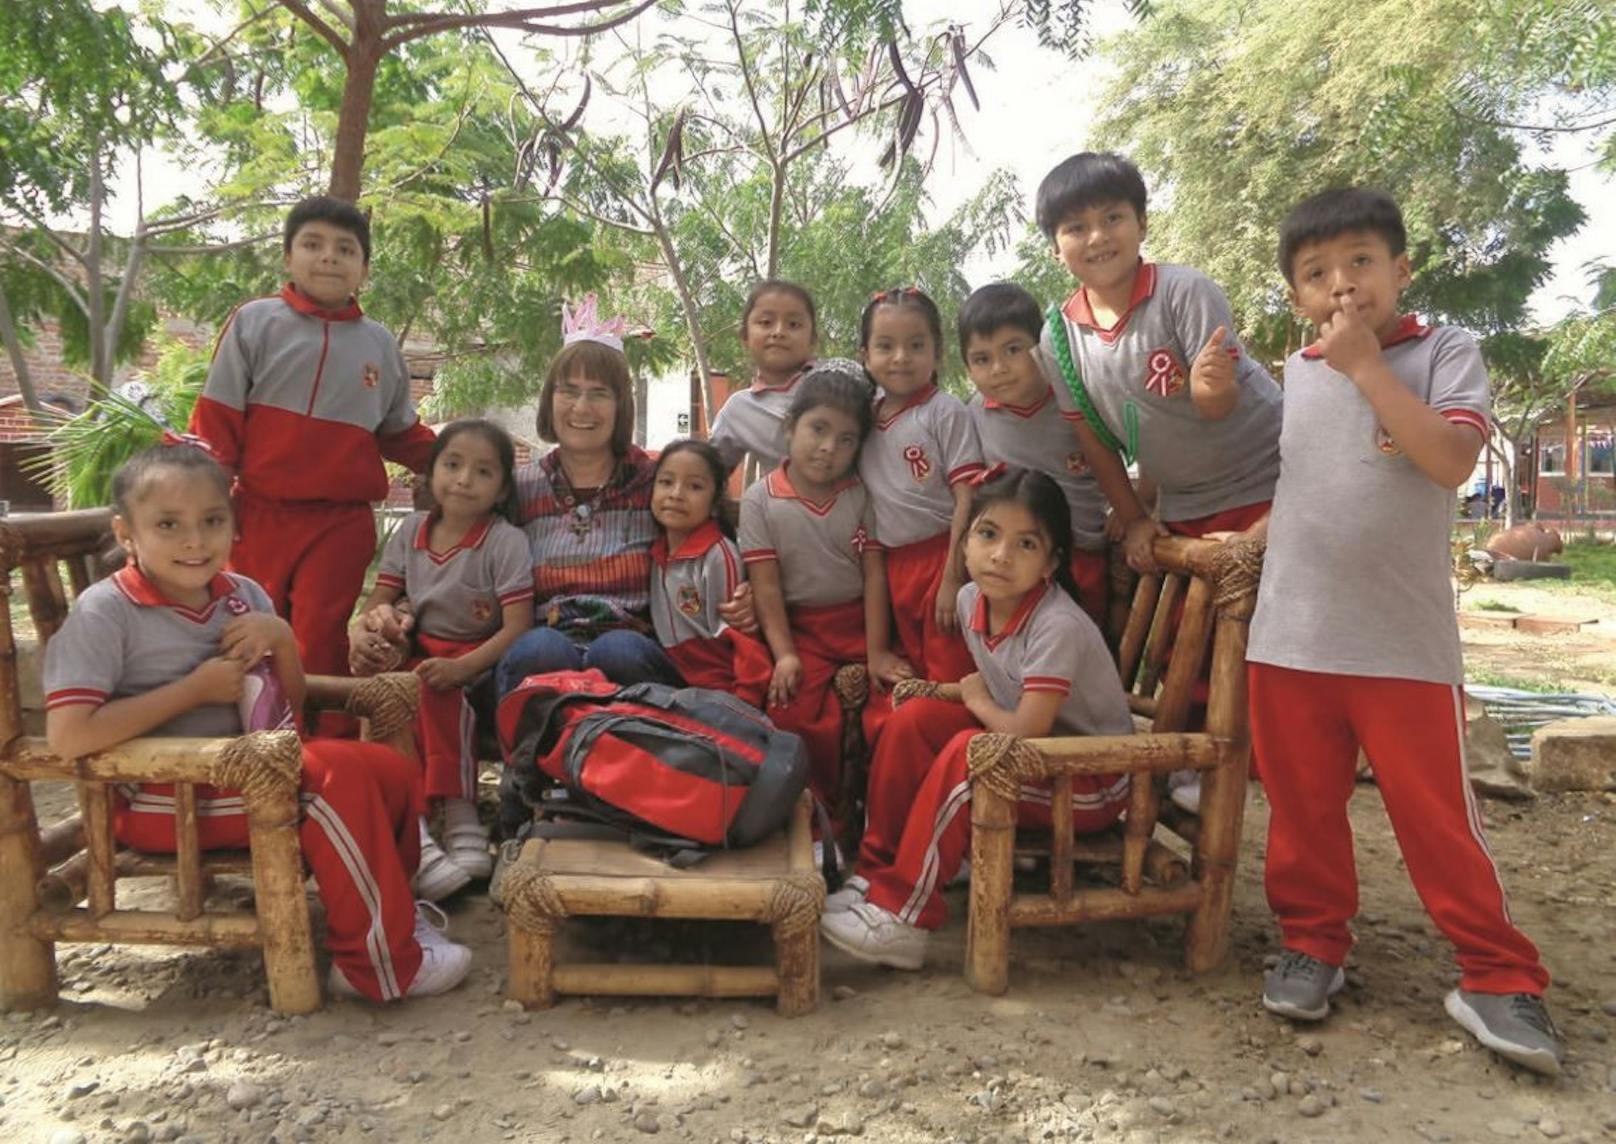 Anden-Missionarin zeigt ihr neues Leben in Peru